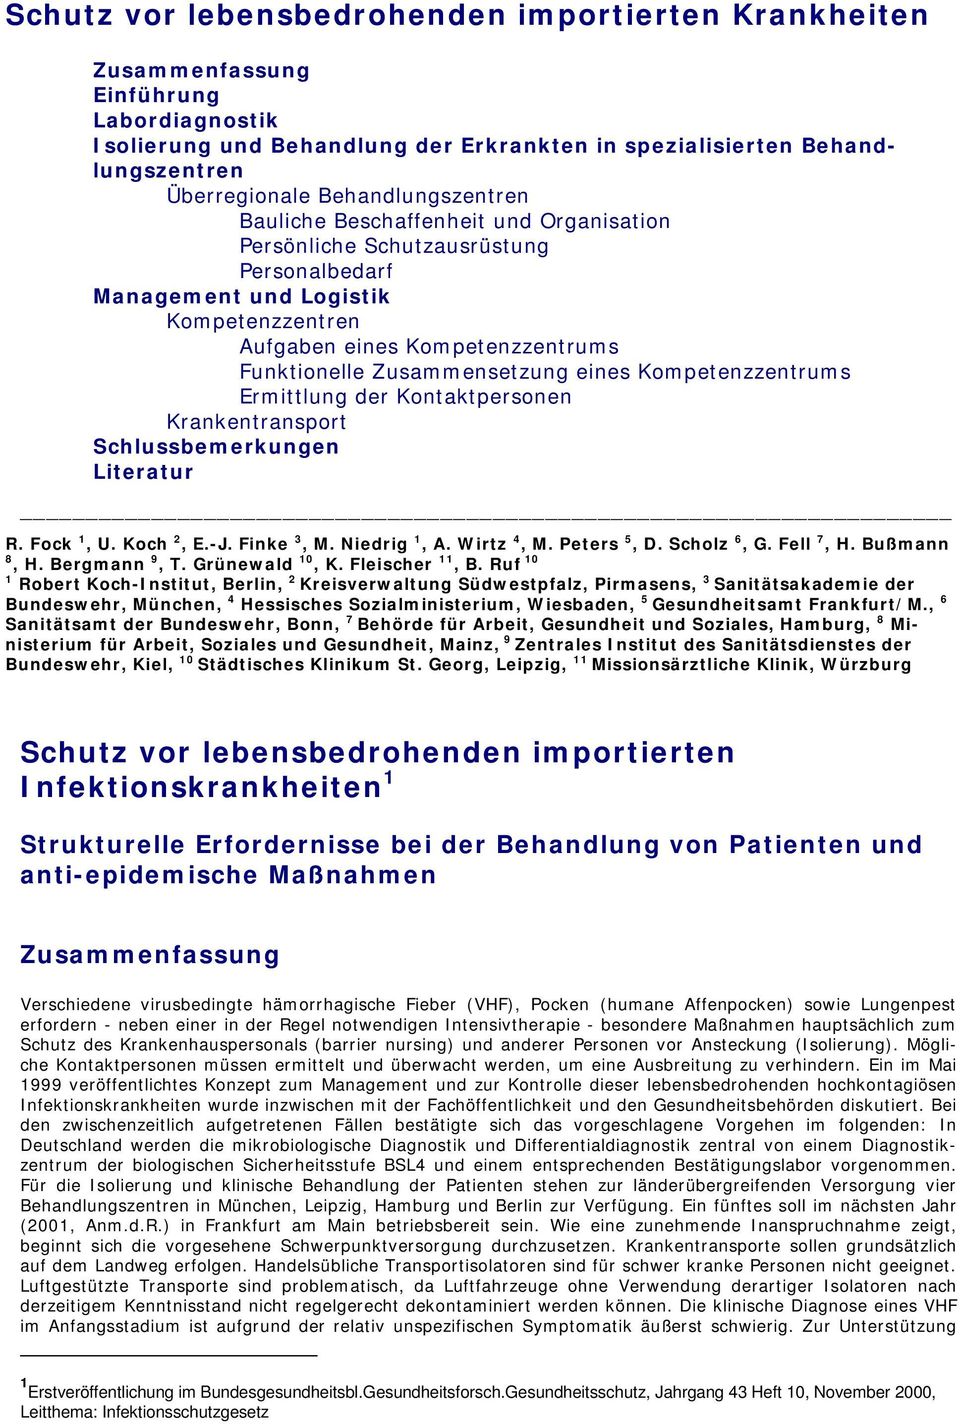 Zusammensetzung eines Kompetenzzentrums Ermittlung der Kontaktpersonen Krankentransport Schlussbemerkungen Literatur R. Fock 1, U. Koch 2, E.-J. Finke 3, M. Niedrig 1, A. Wirtz 4, M. Peters 5, D.